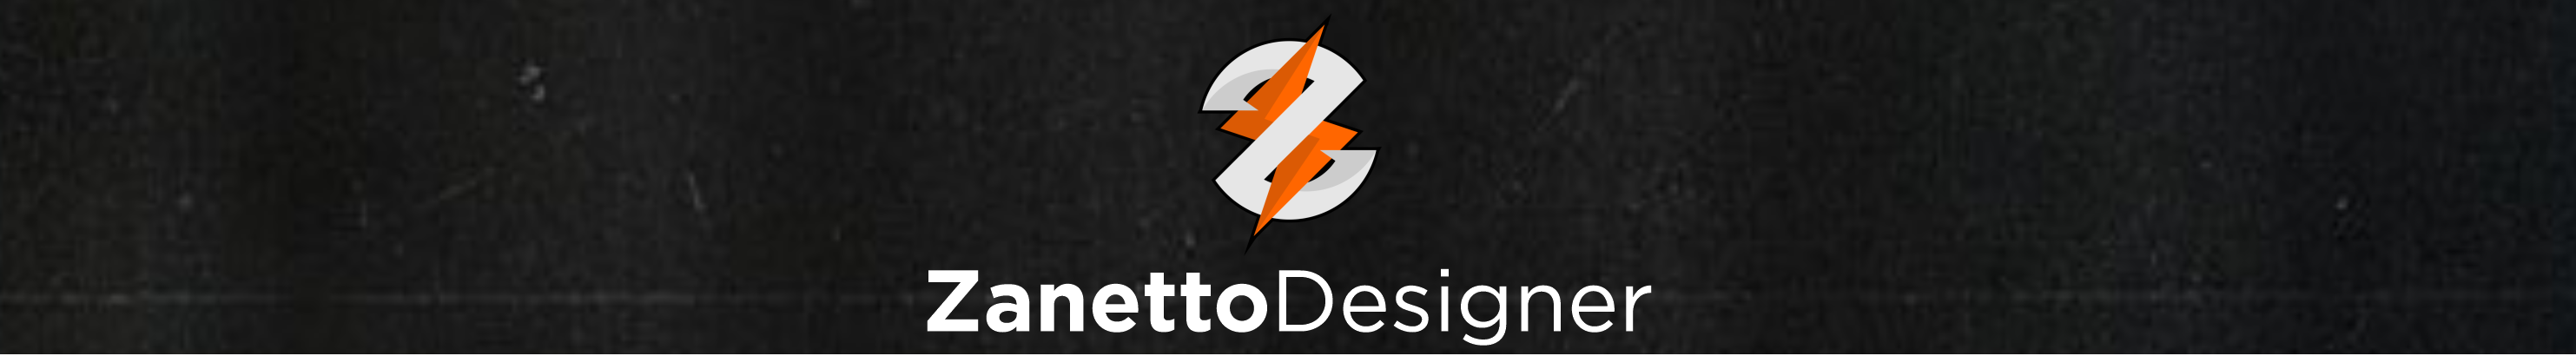 Banner de perfil de Zanetto Designer